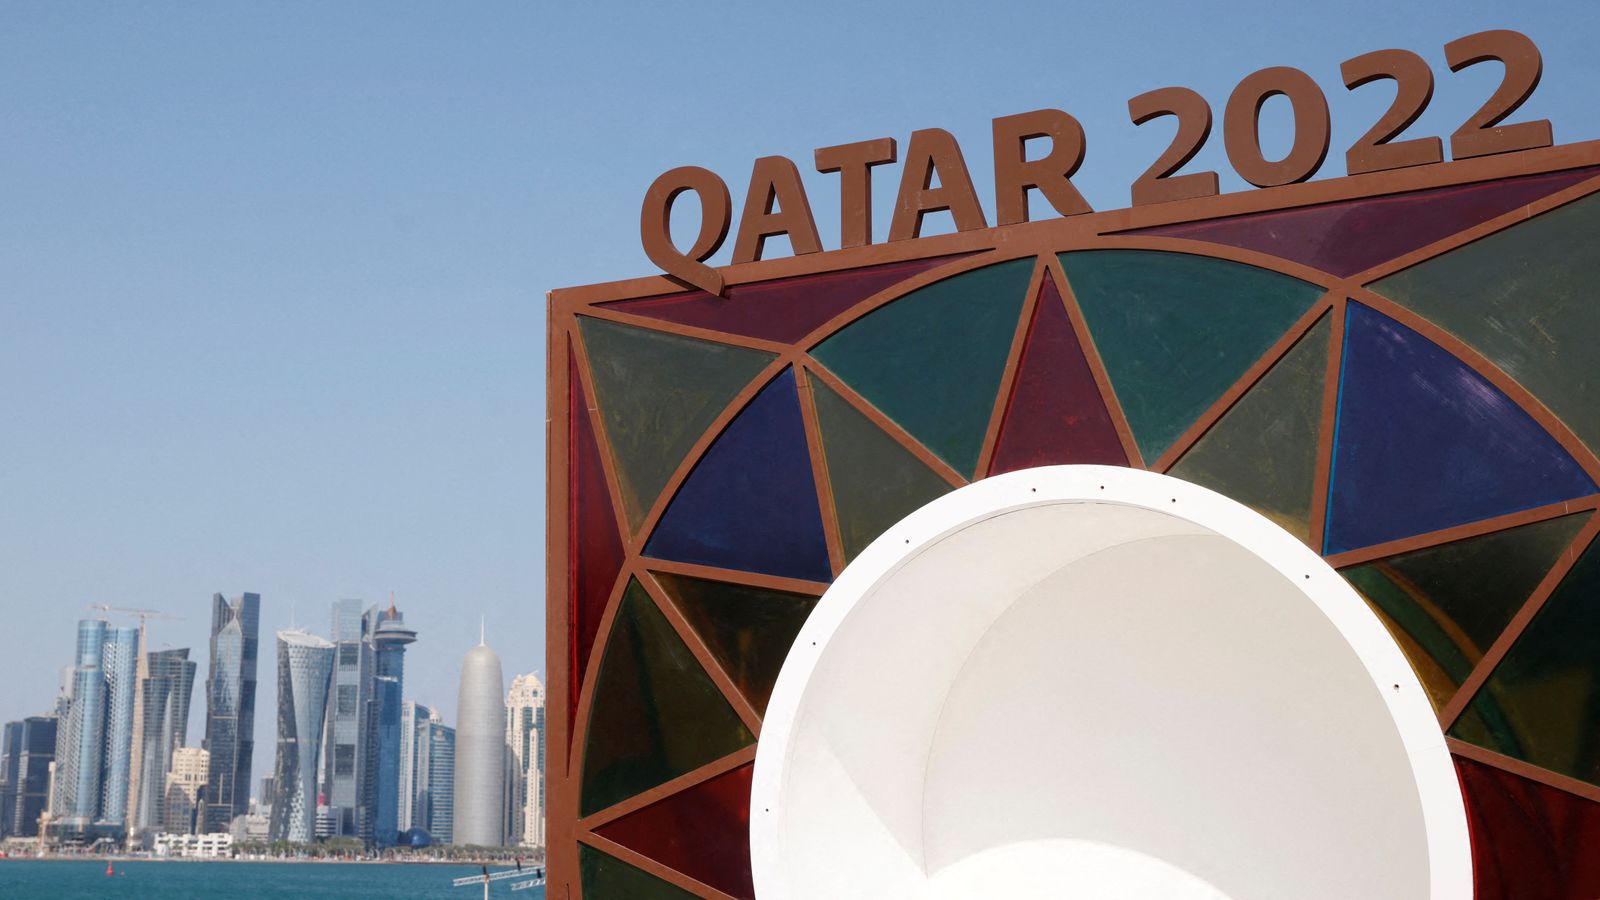 توفي عامل في قطر في الموقع الذي تستخدمه السعودية في المونديال اخبار العالم